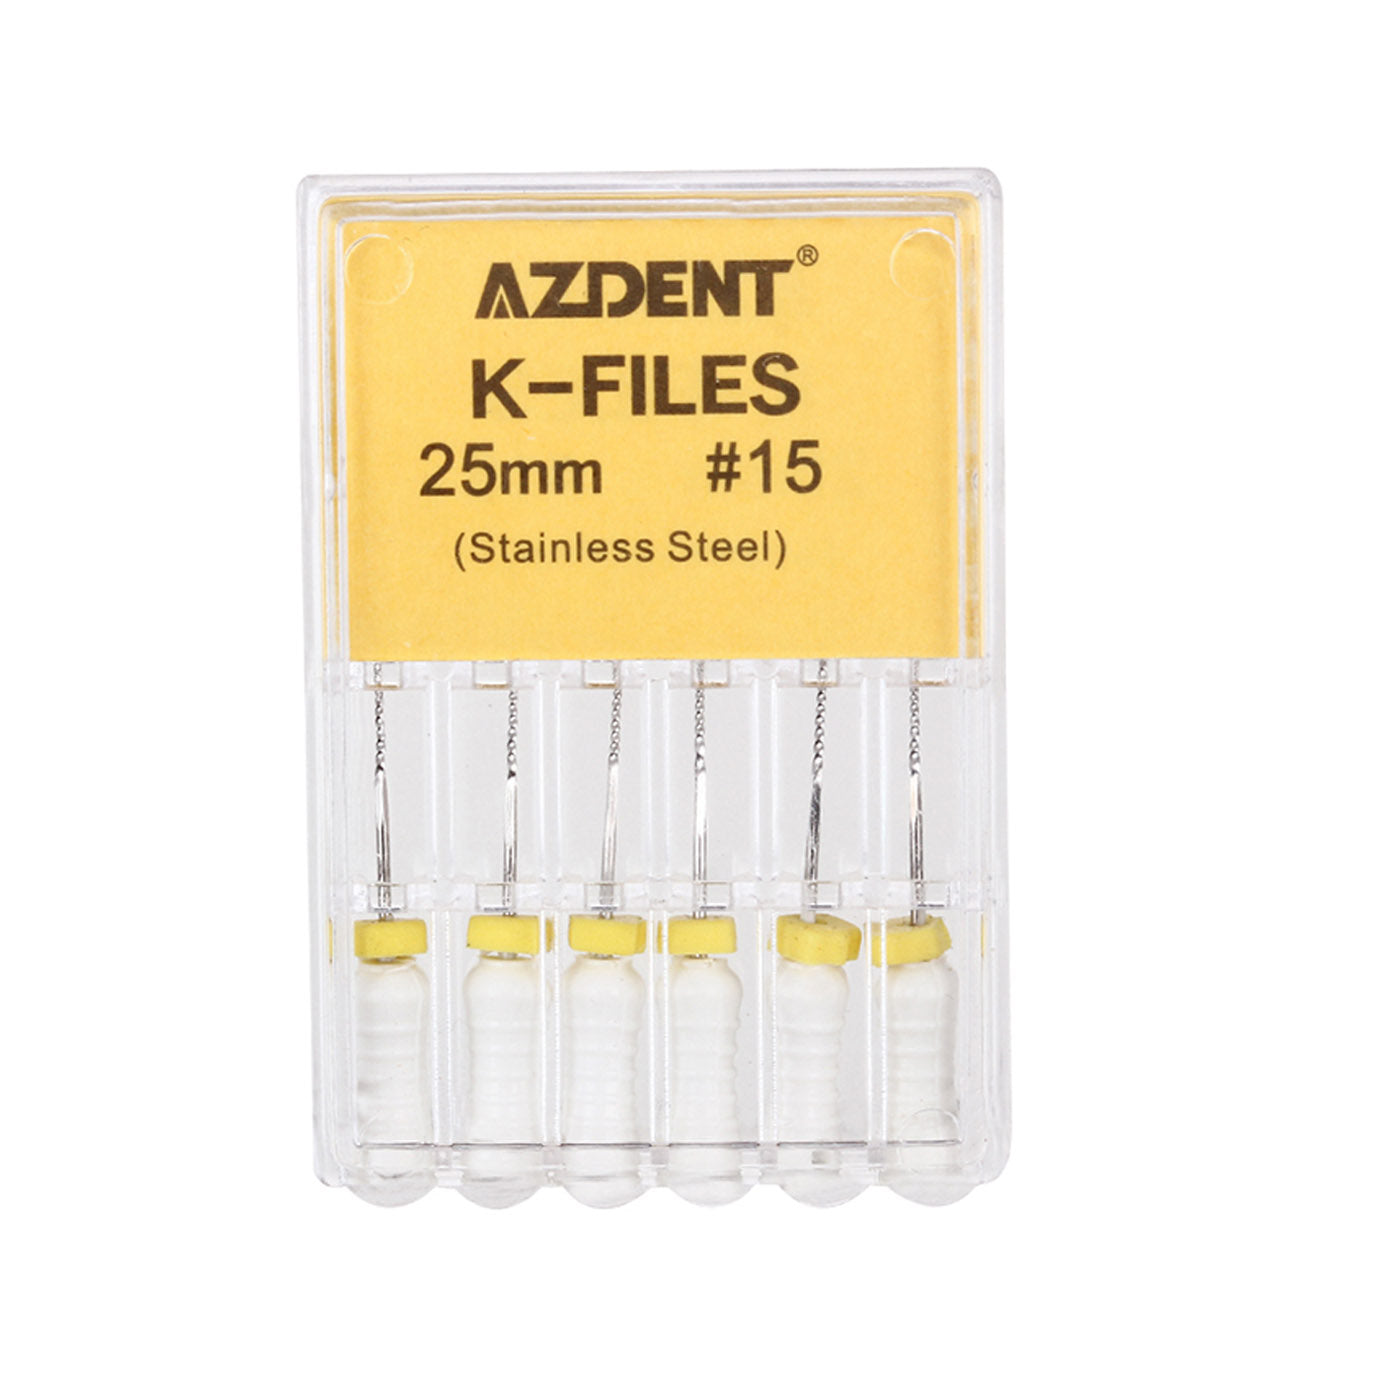 AZDENT Dental Hand K-Files Stainless Steel 25mm #15 White 6pcs/Box-azdentall.com